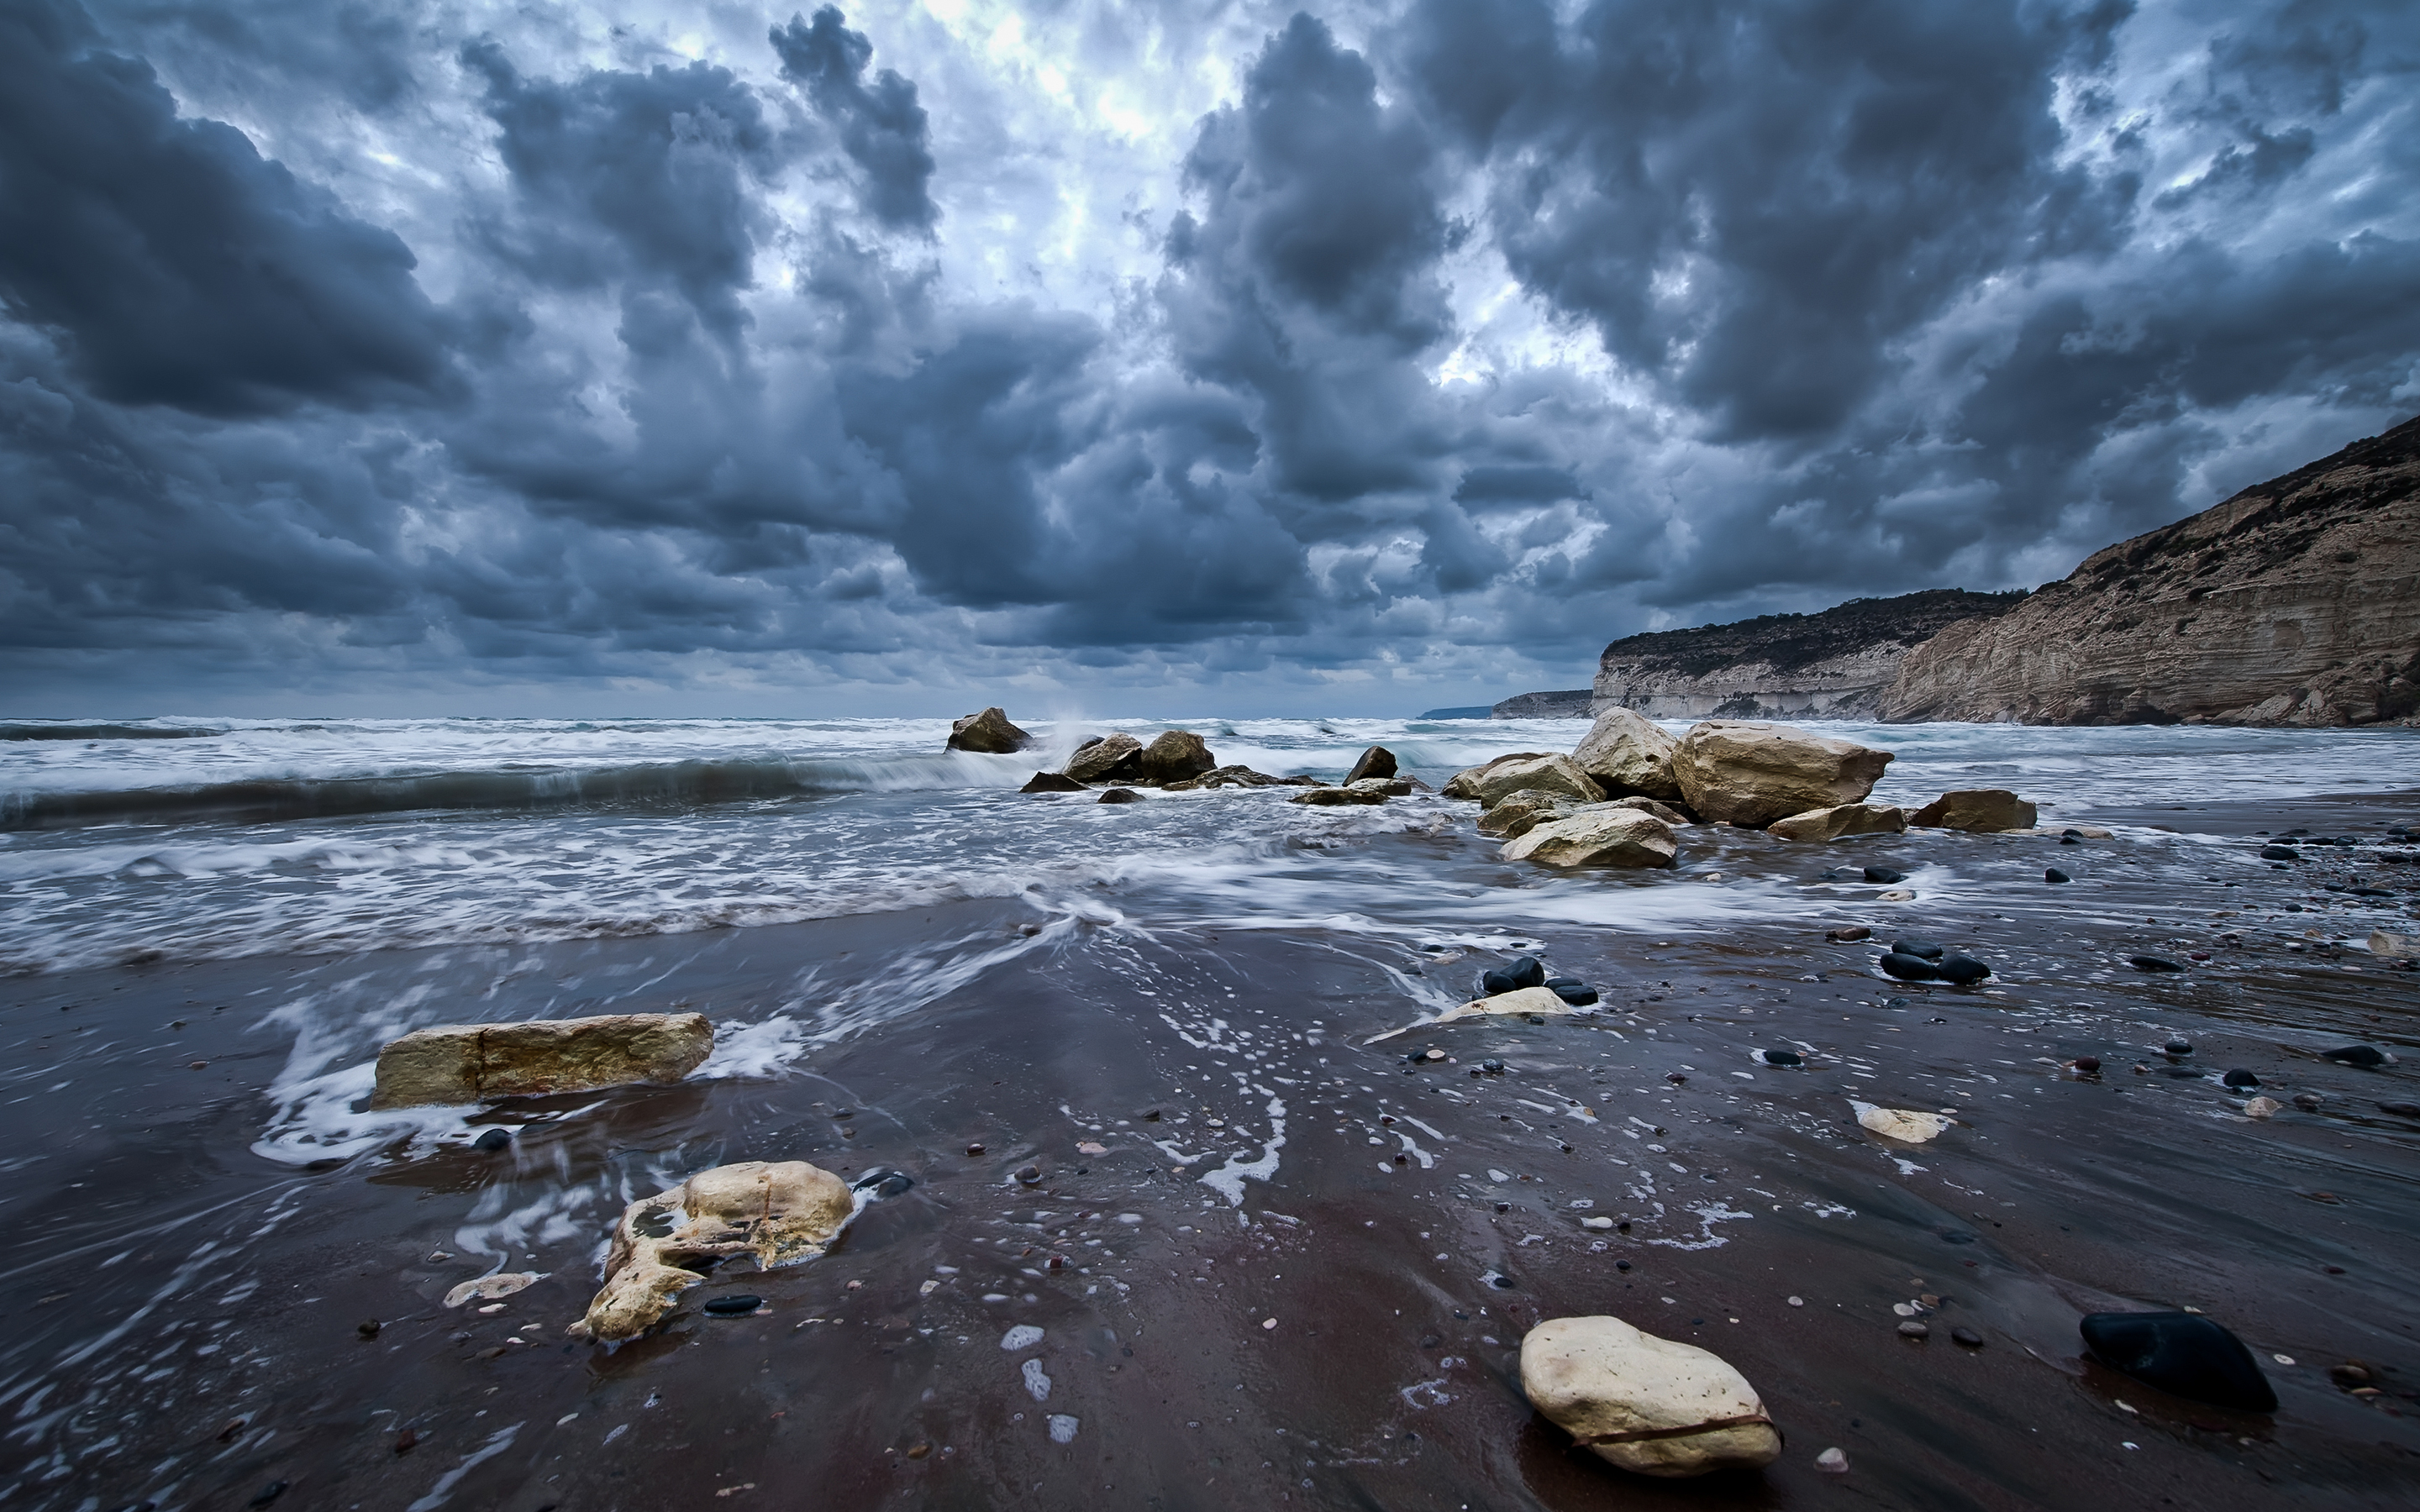 Море на сотни миль вокруг казалось пустынным. Каменный пляж Териберка. Териберка Баренцево море шторм. Балтийское море шторм. Каспийское море шторм.